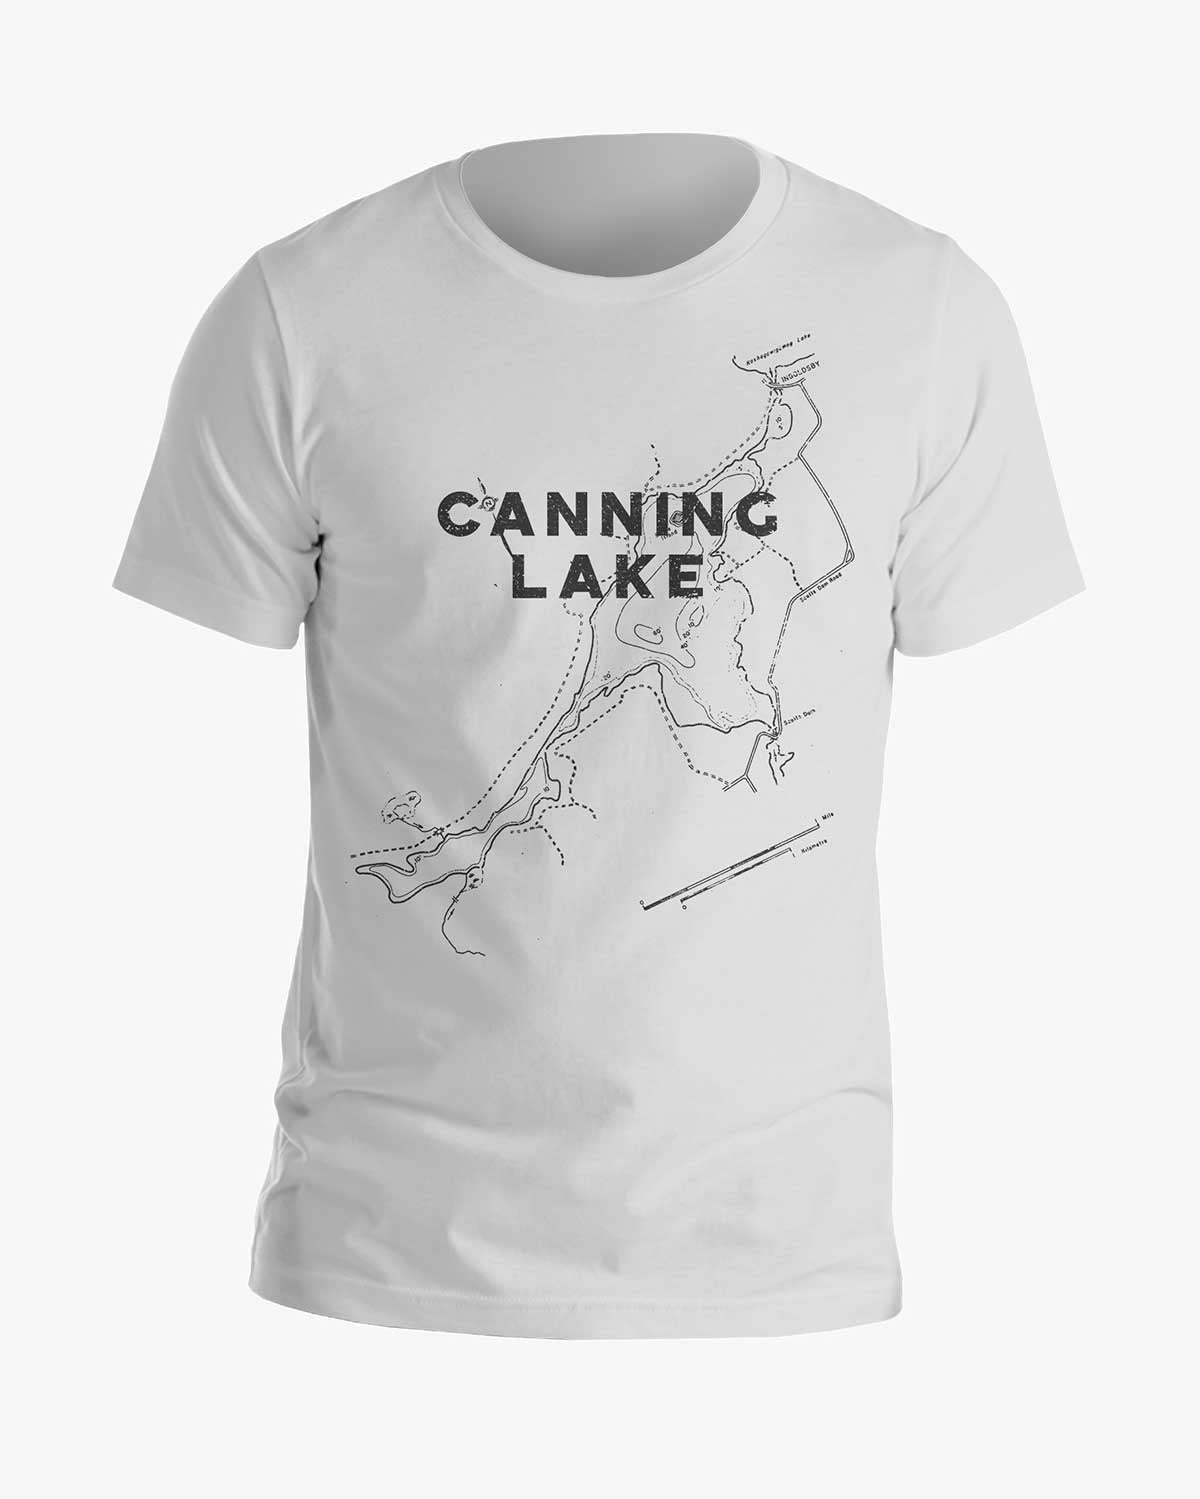 Lake Contours - Canning Lake - Tee